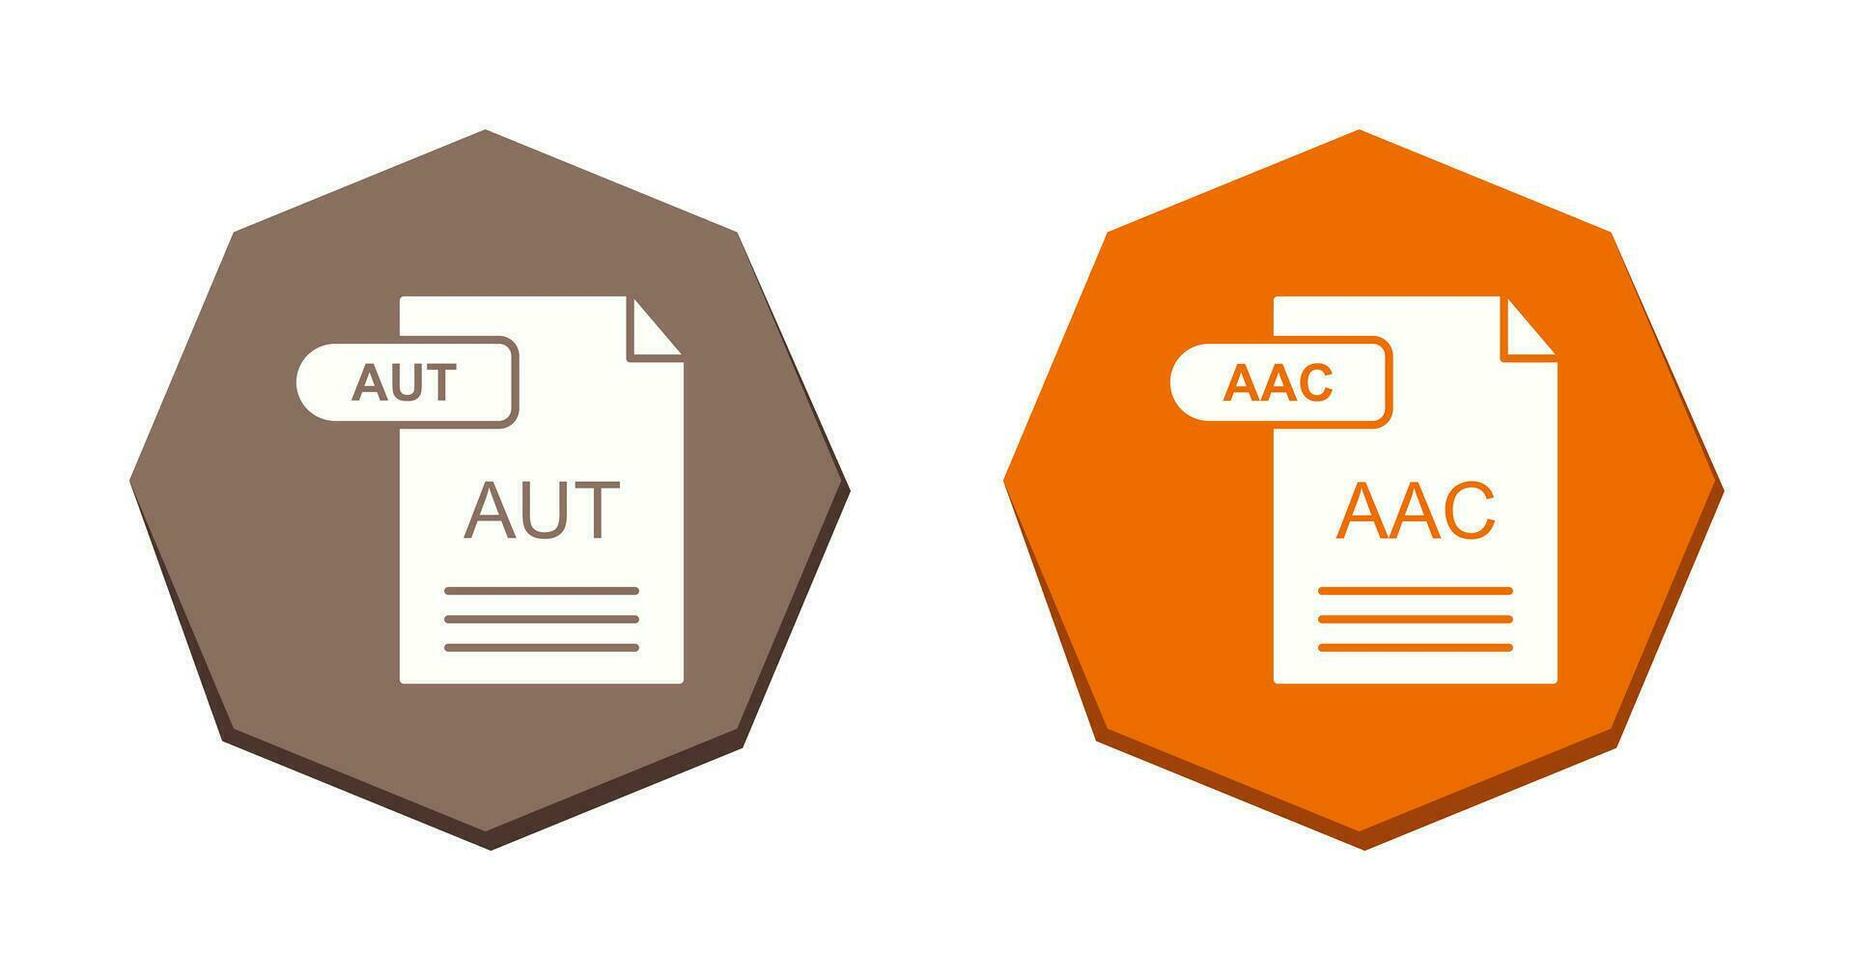 aac och aut ikon vektor